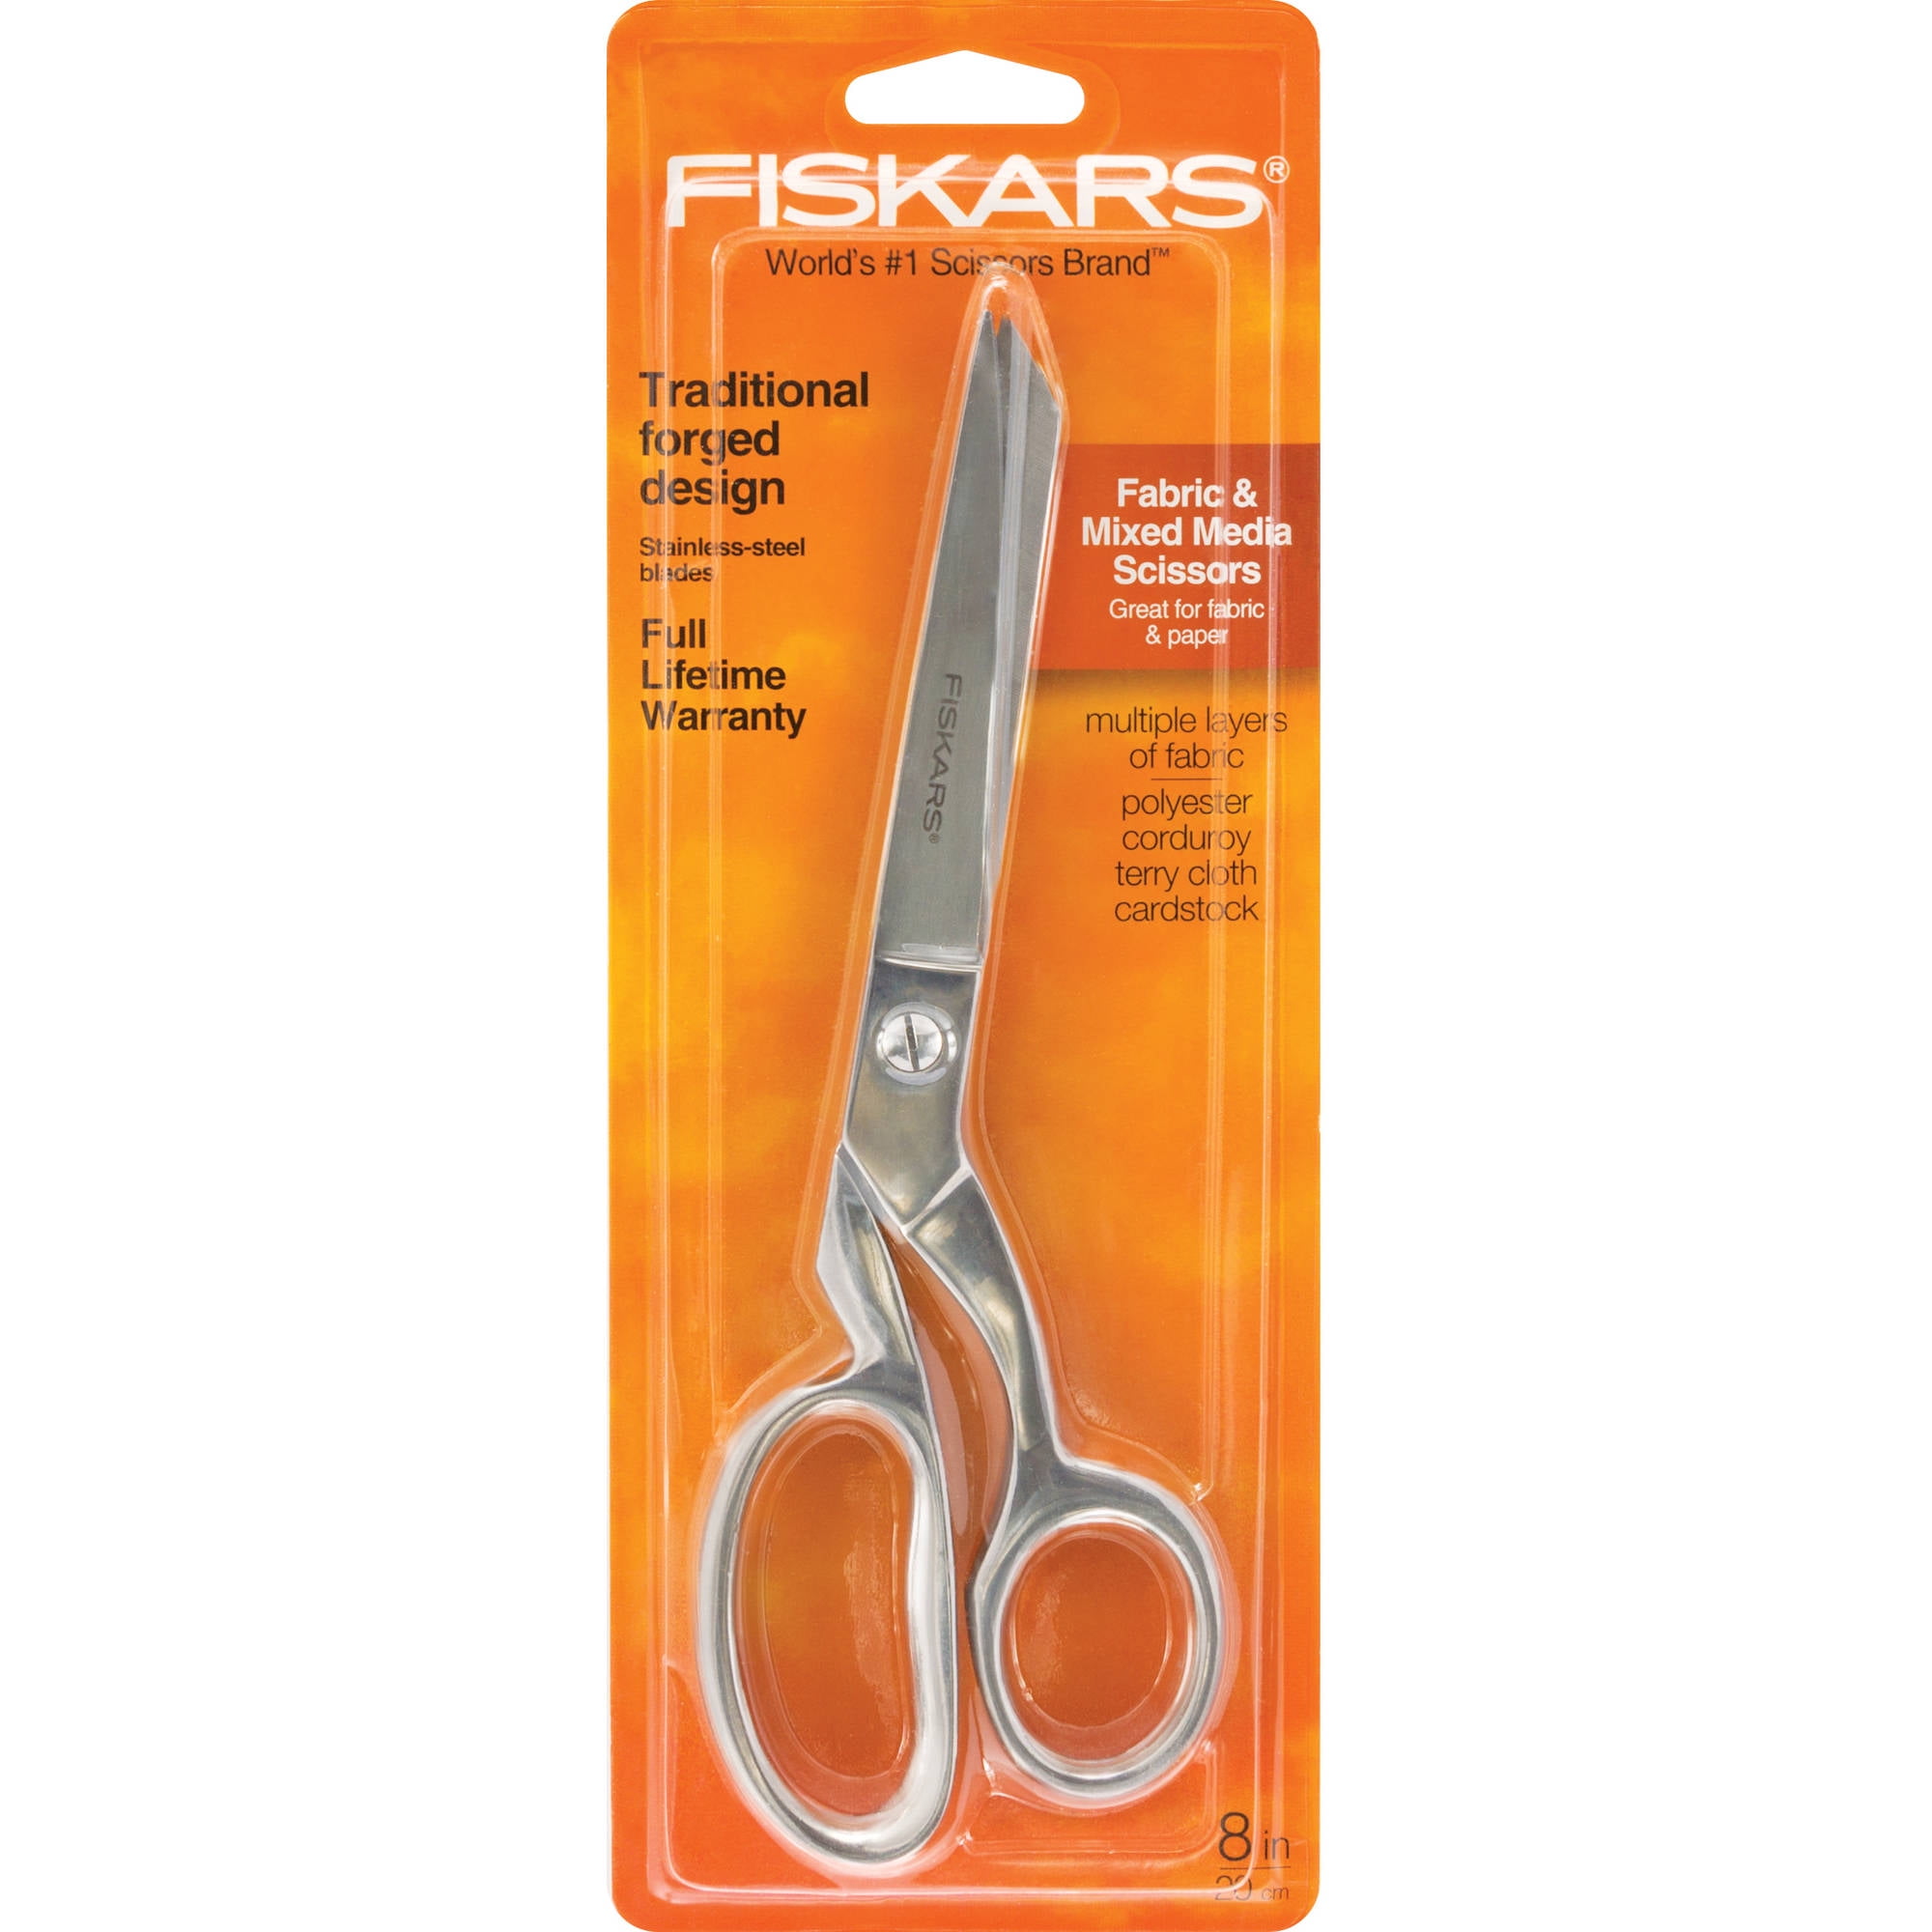 fiskars sewing scissors